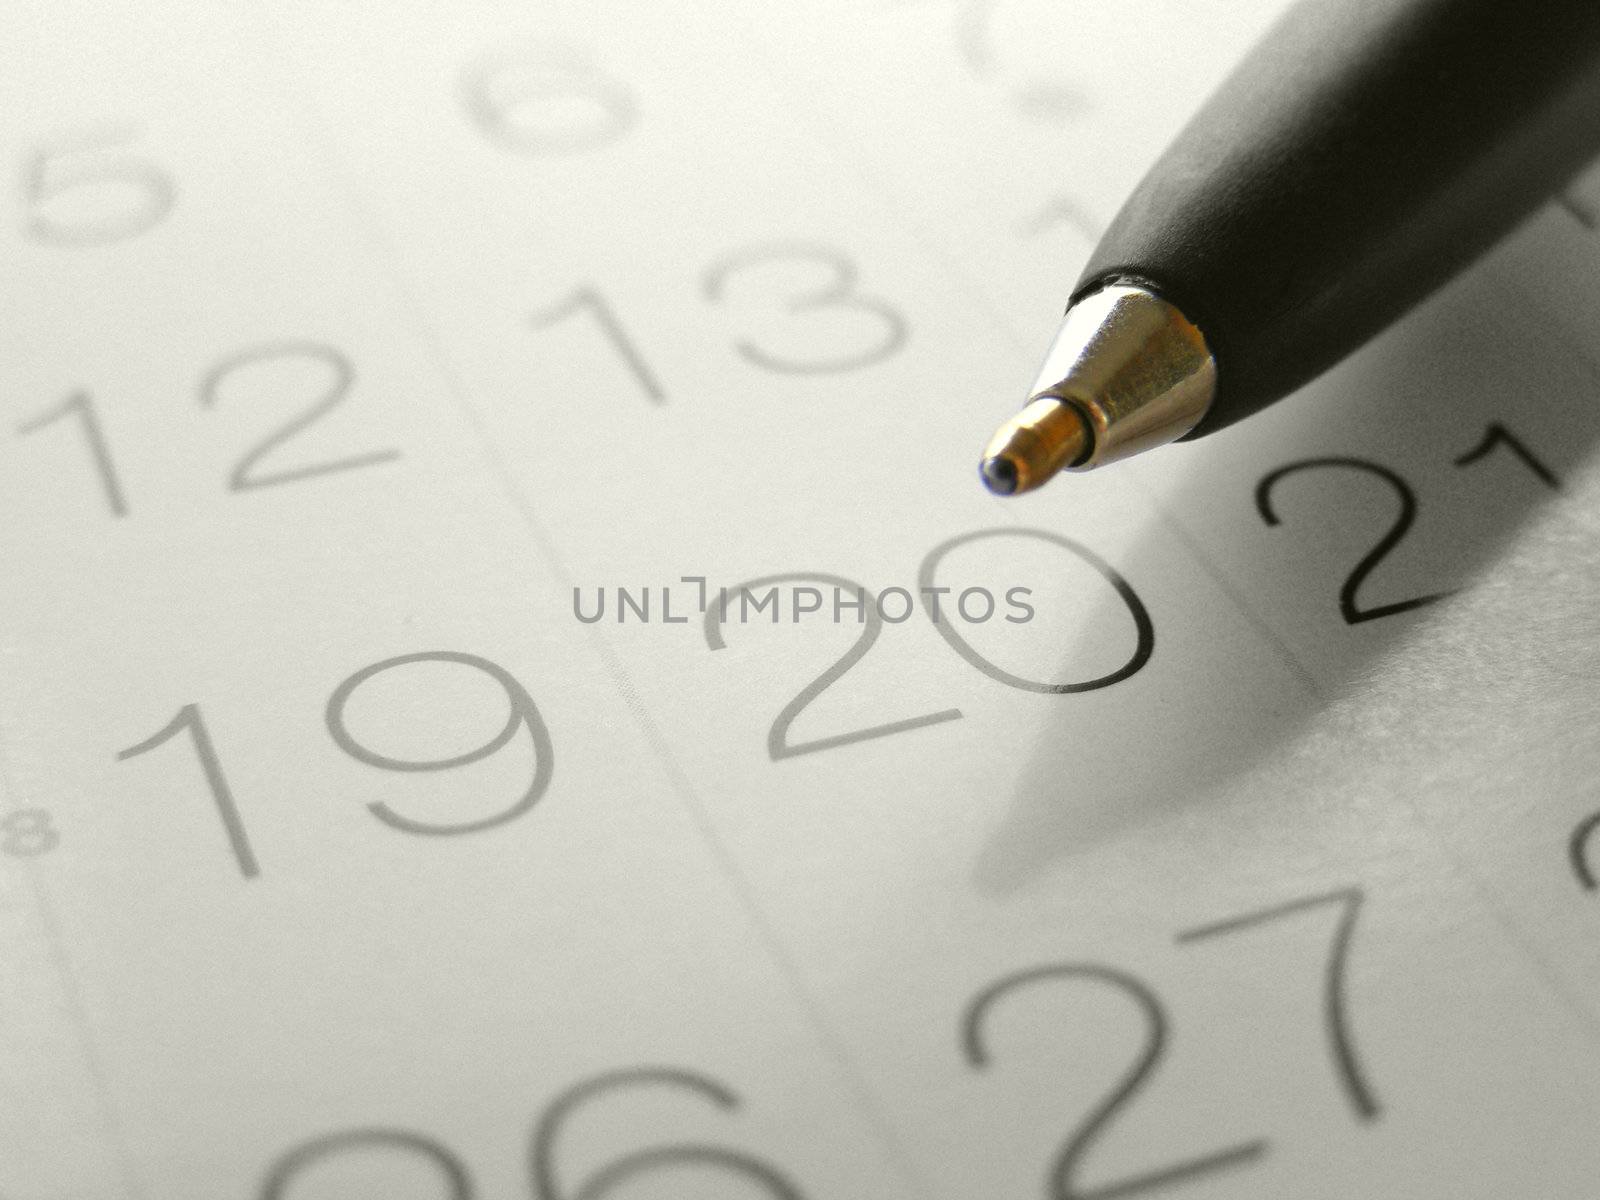 Calendar with pen